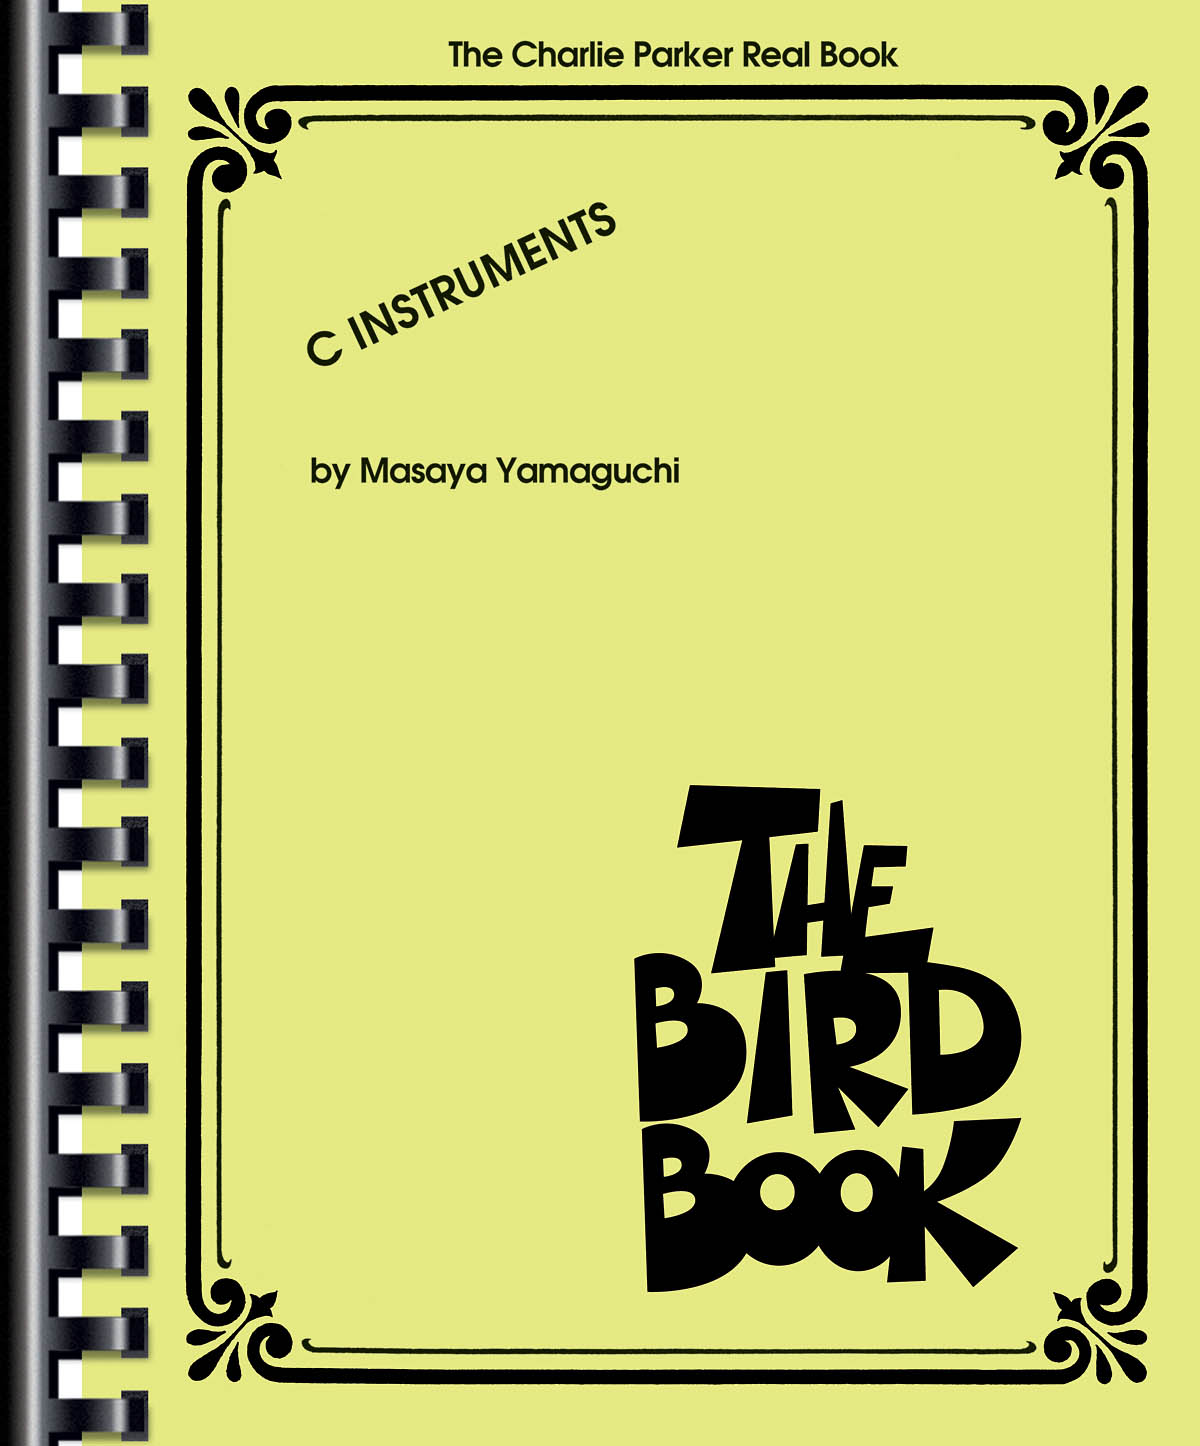 The Bird Book   - The Charlie Parker Real Book (C Instruments) - melodie pro nástroje v ladění C